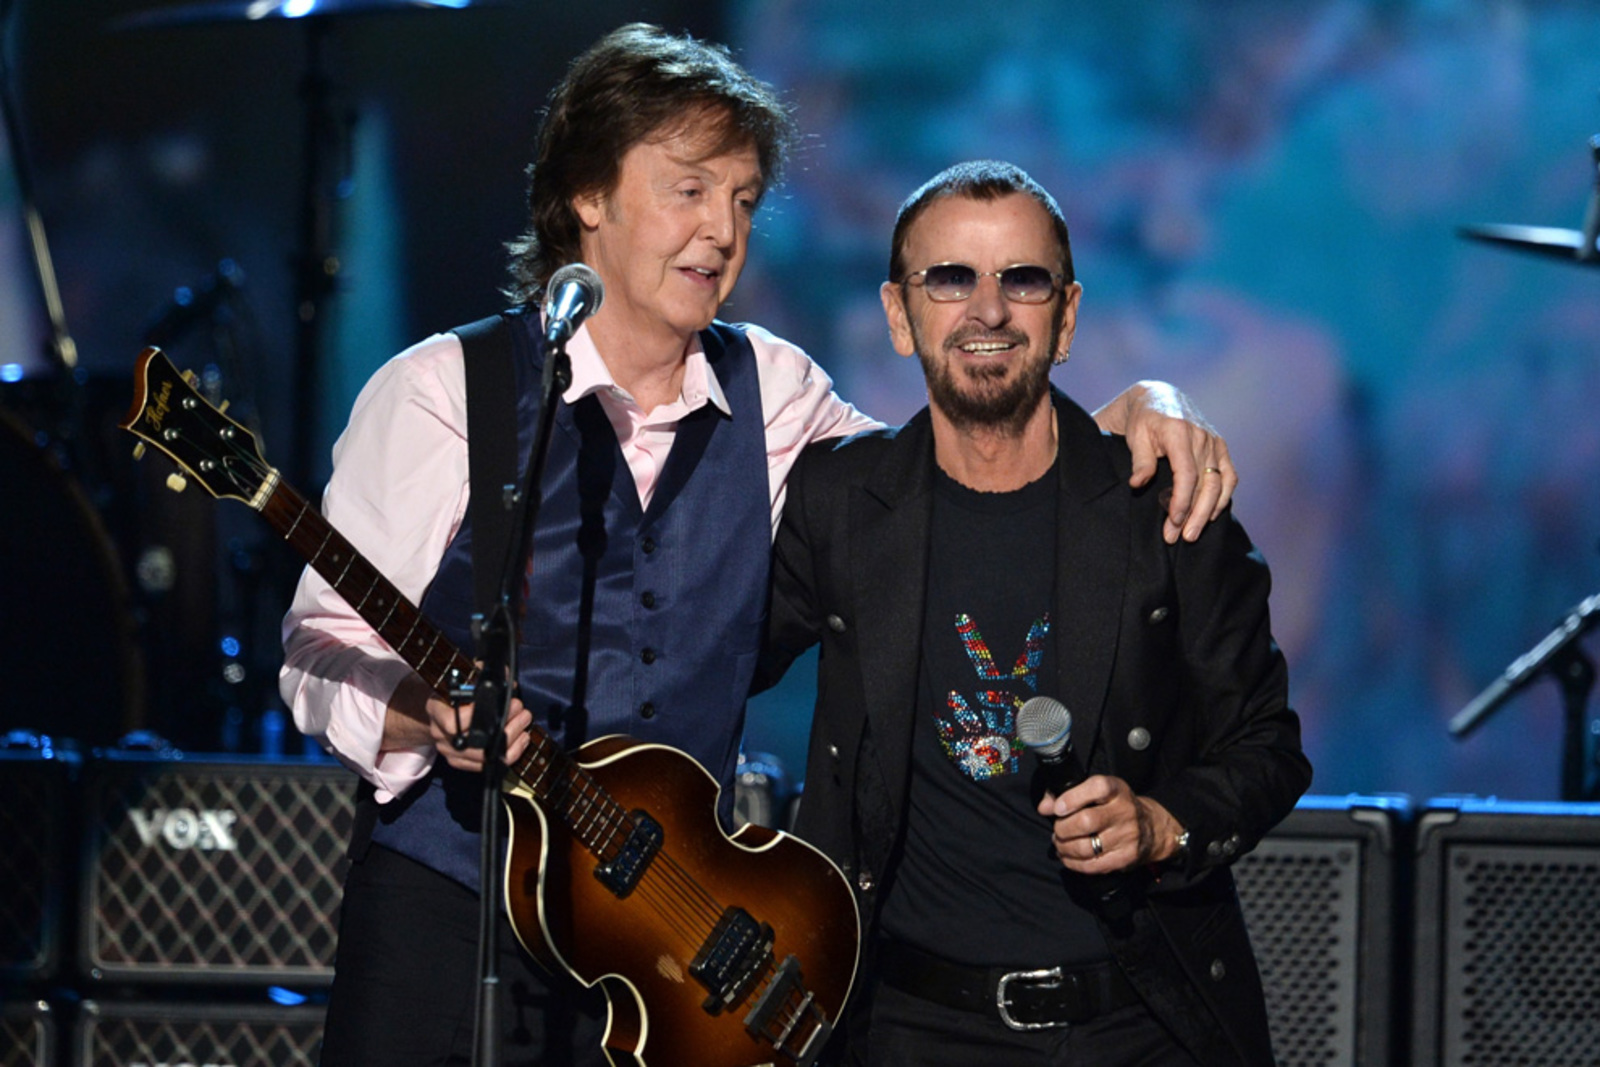 Ringo aparece por sorpresa en concierto de Paul